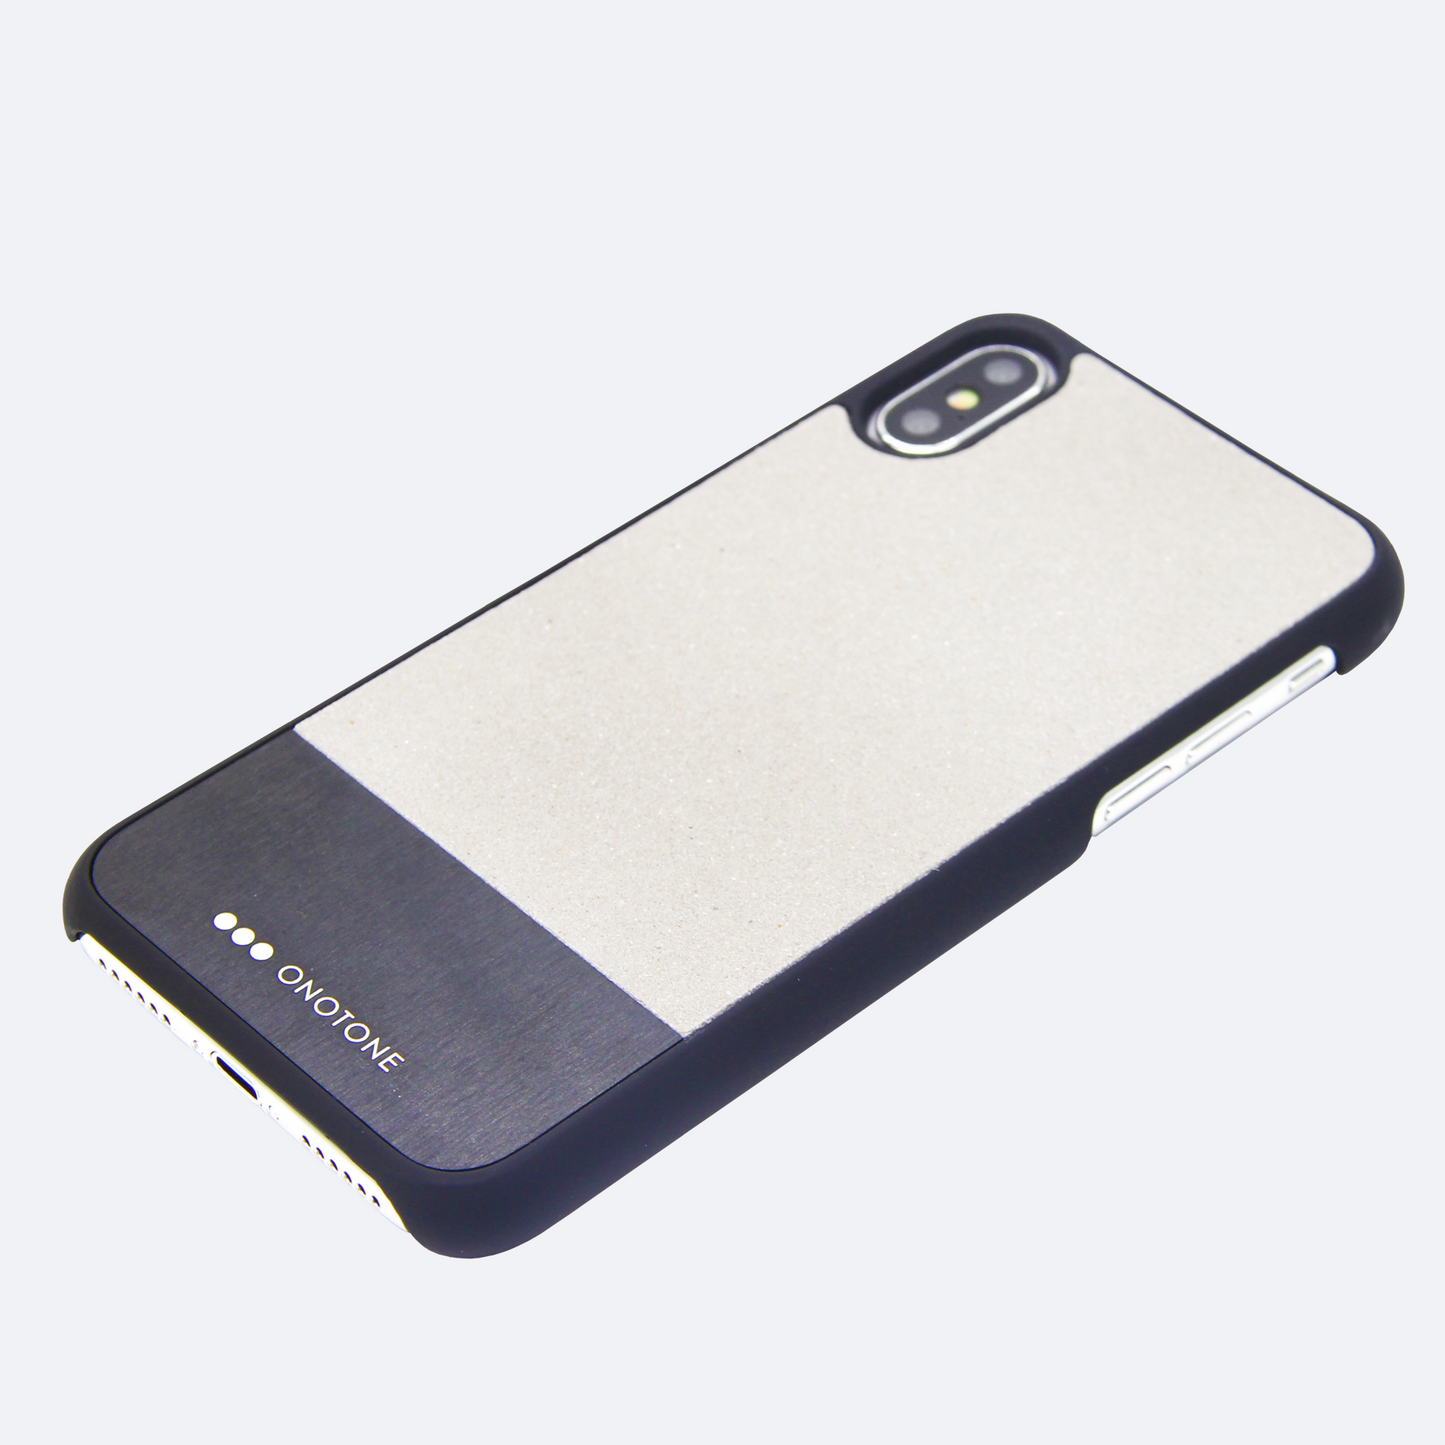 Stylish iPhone cases